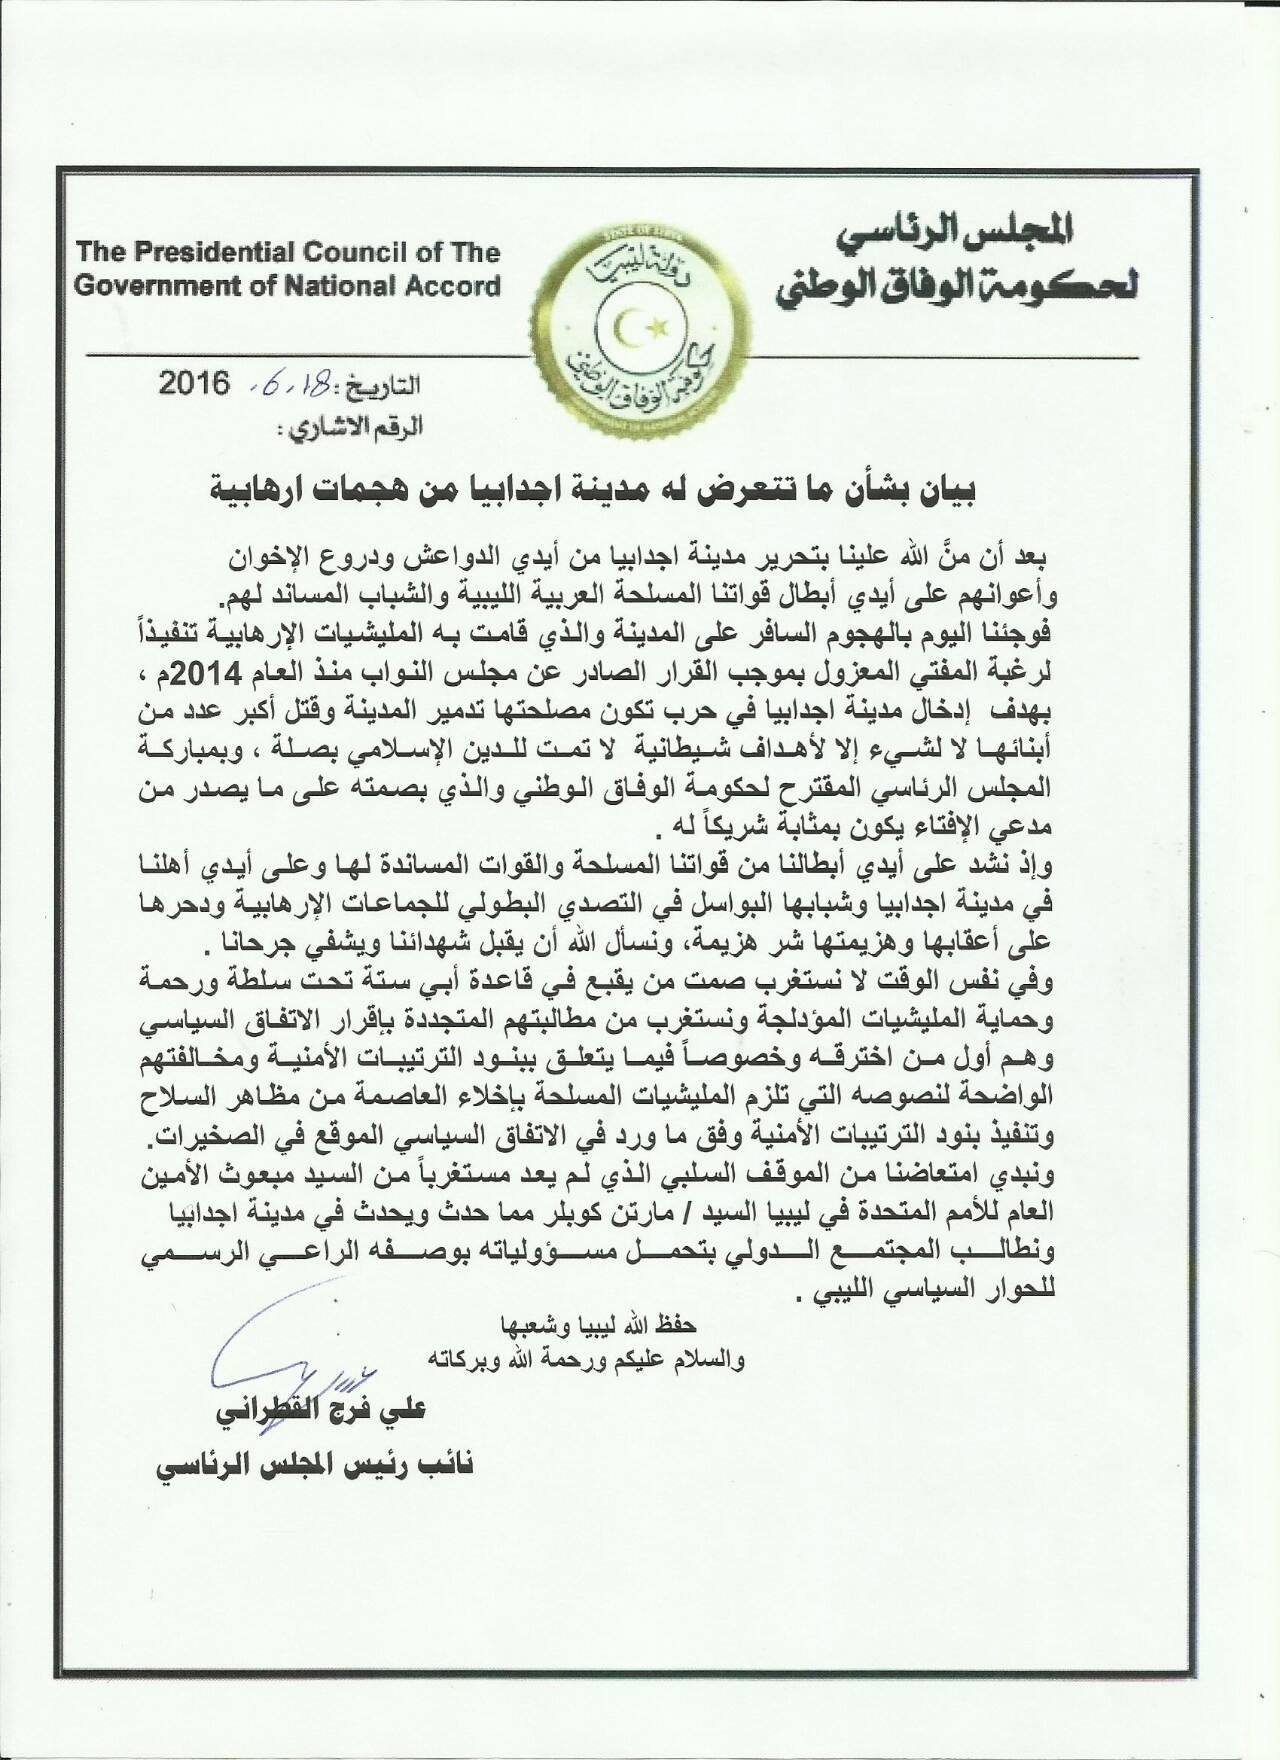 بيان عضو المجلس الرئاسي المقاطع علي القطراني بخصوص الهجوم على مدينة اجدابيا